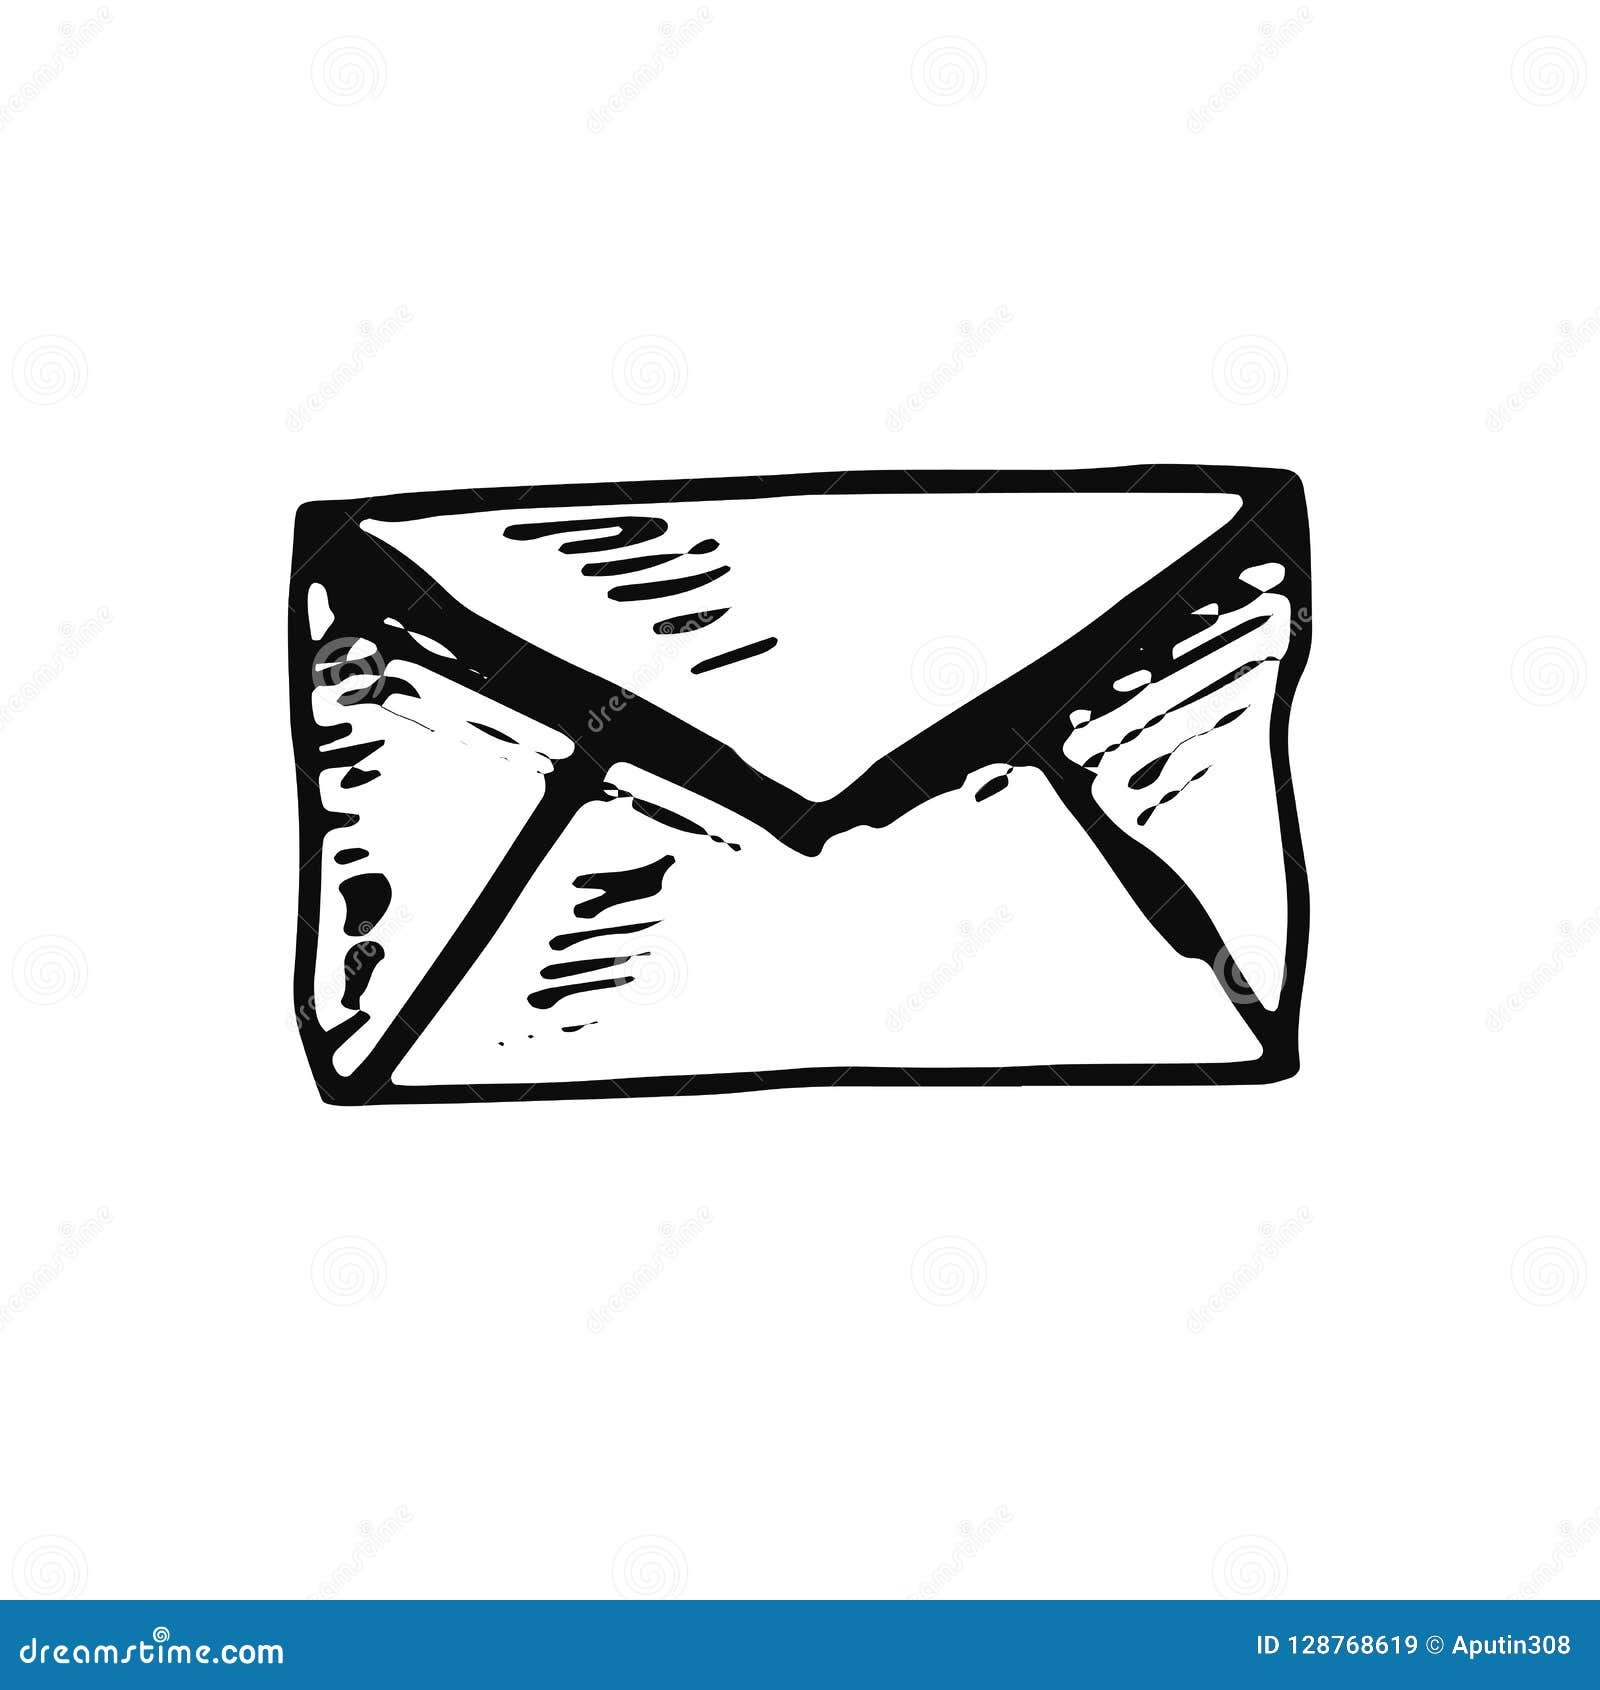 Premium Vector  Hand drawn sketch icon envelope